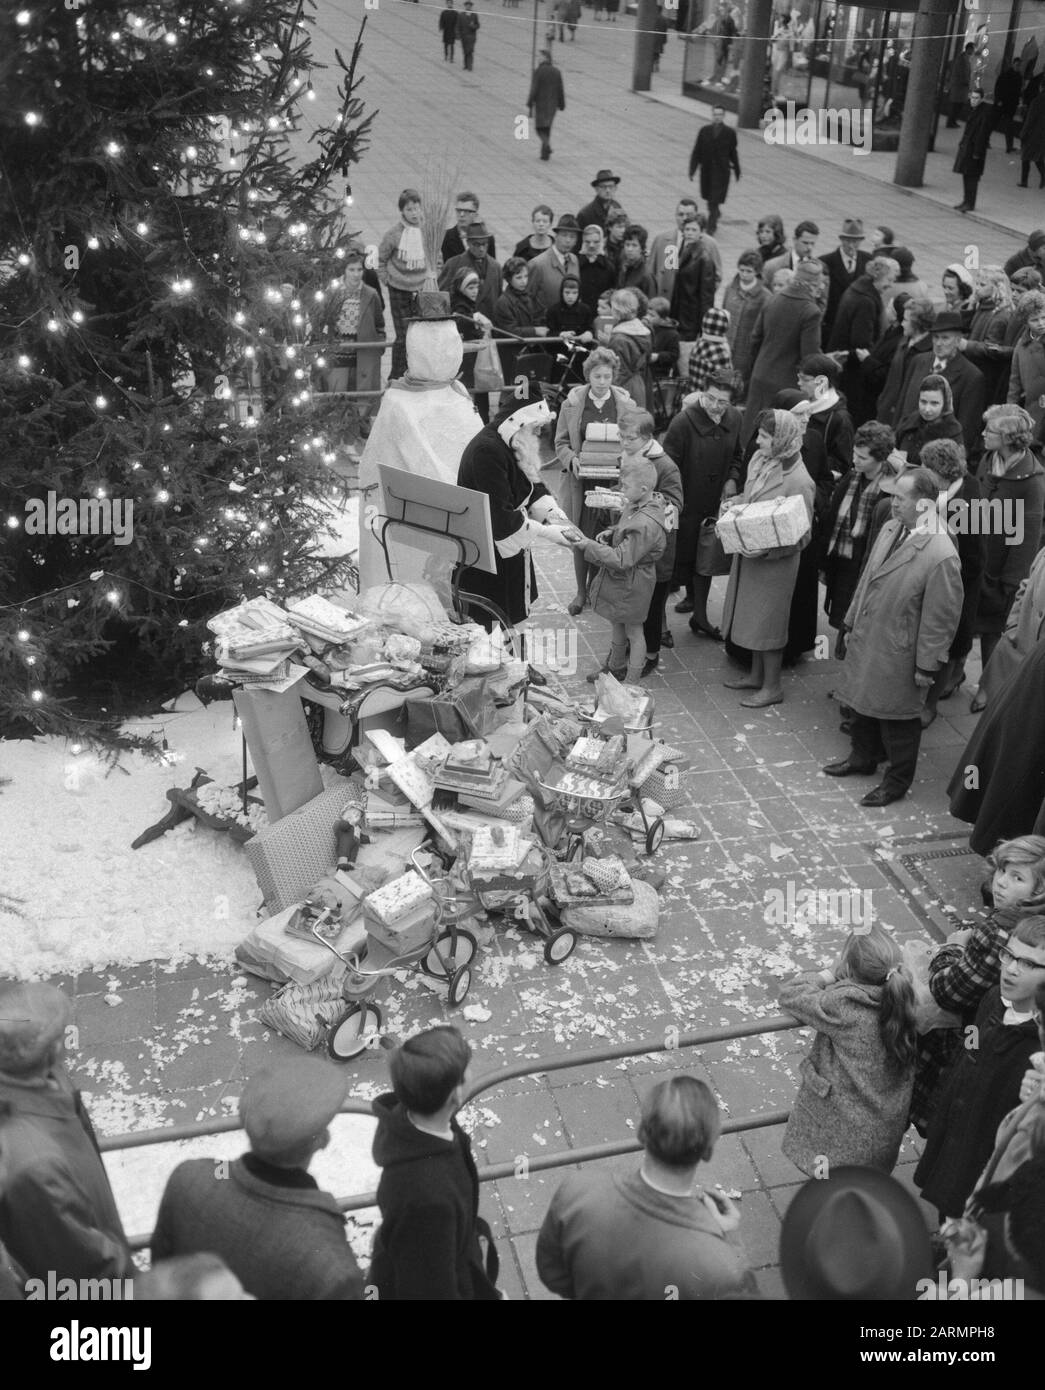 Weihnachtsausgabe von Rotterdam-Menschen an Spastische Kinder Datum: 22. Dezember 1961 Schlagwörter: Kinder, Spastici Stockfoto